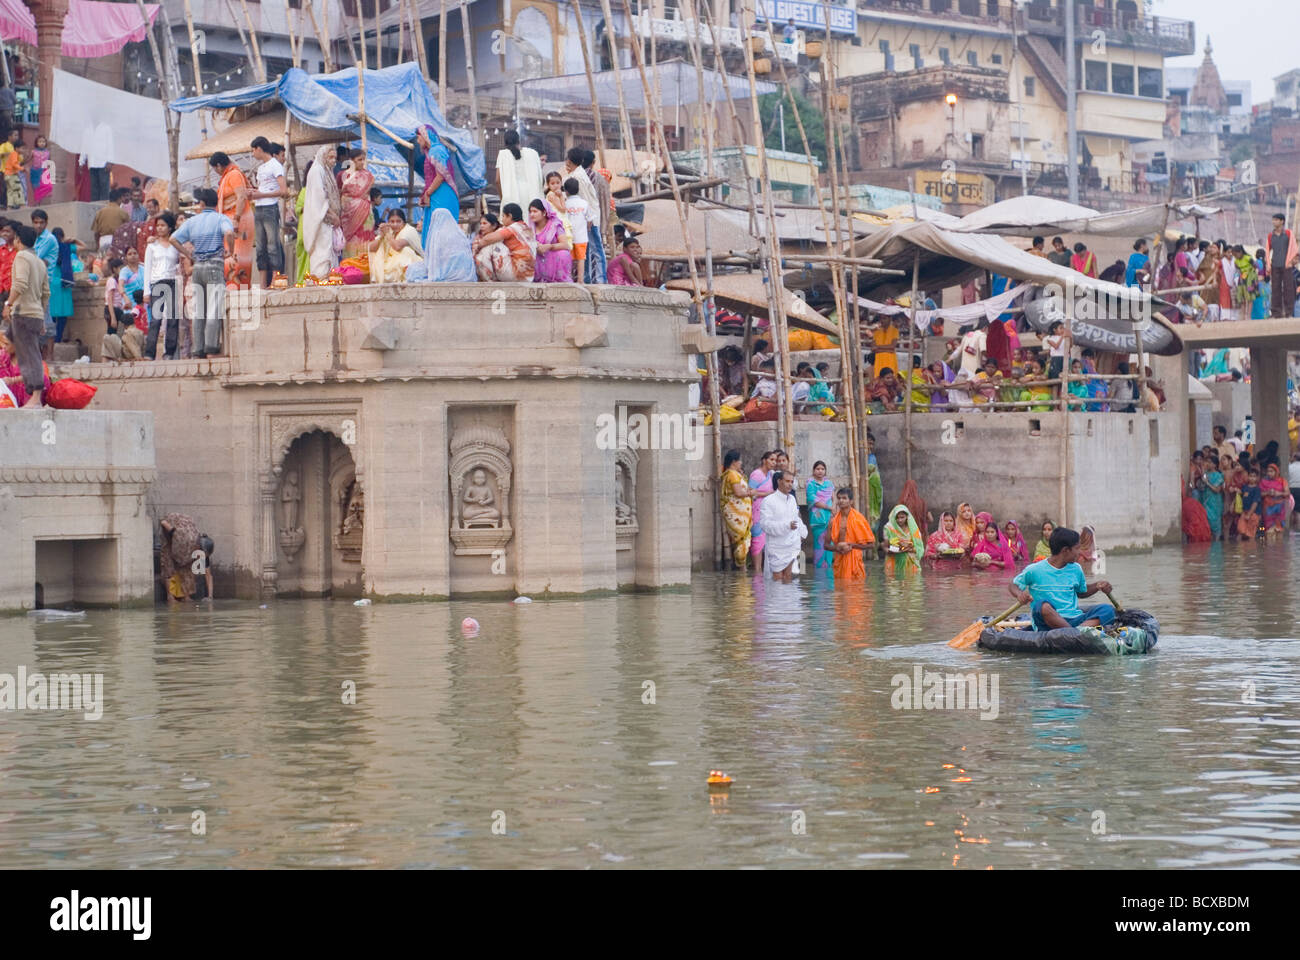 Las personas bañarse en el río Ganges. Varanasi, India. Foto de stock